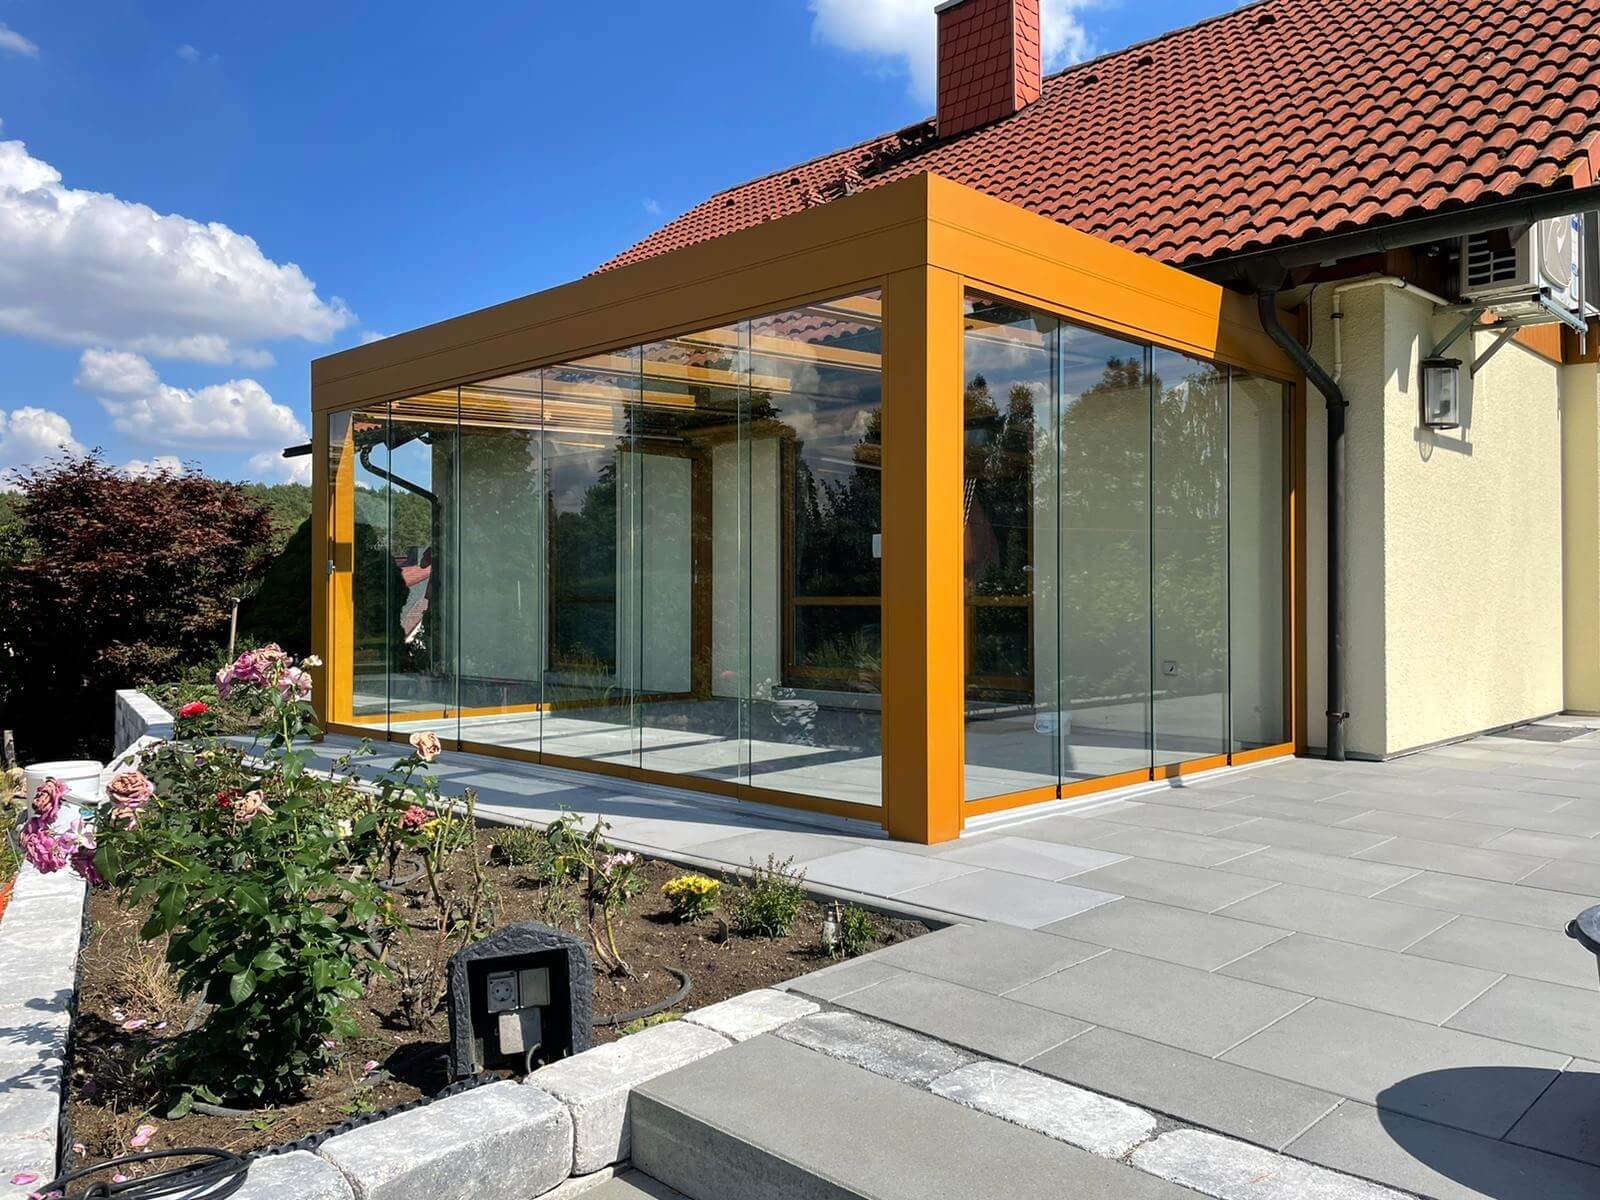 Sommergarten-Lounge in Wittenberg, montiert von Ottis Fenster und Türen aus Bad Düben, sind eine stilvolle Überdachung-Lösung für Terrassen